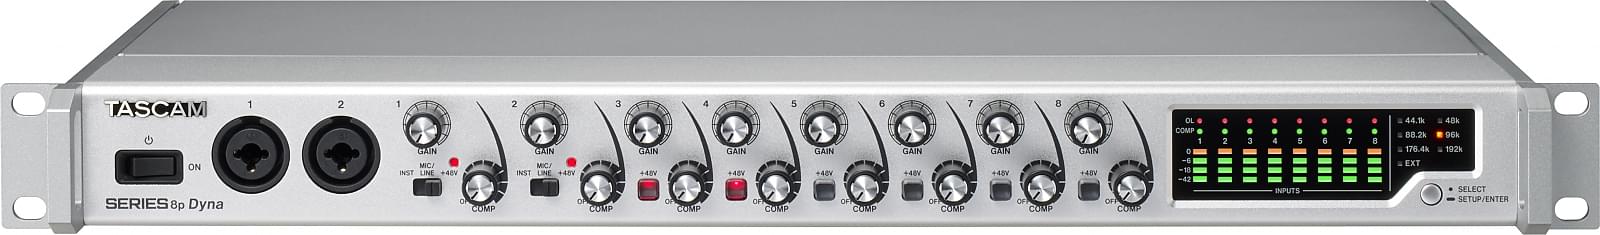 Ośmio-kanałowy przedwzmacniacz mikrofonowy z analogową kompresją | Tascam SERIES 8p Dyna